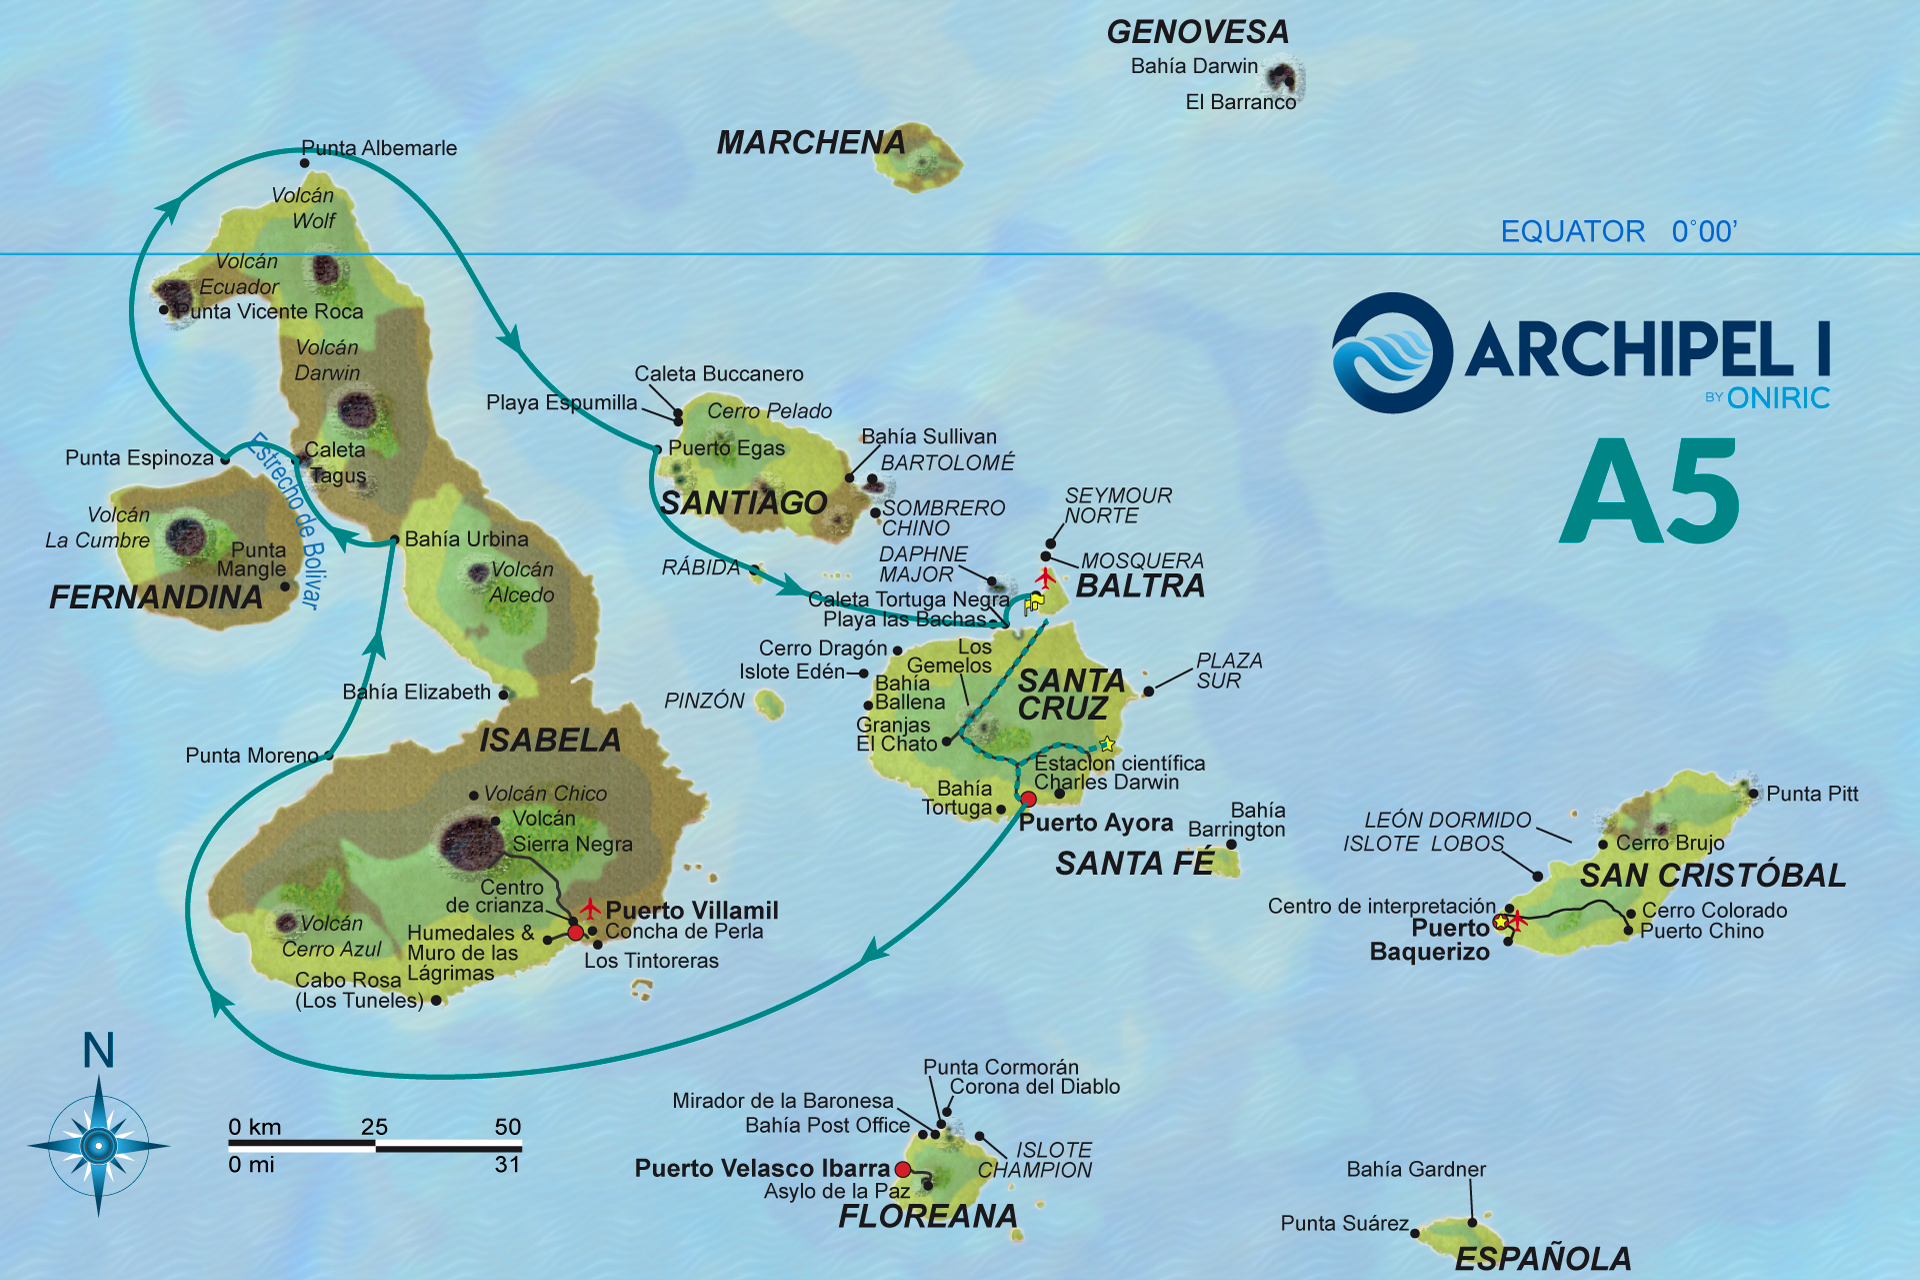 galapagos-mapa-archipel-1-A5-oniric